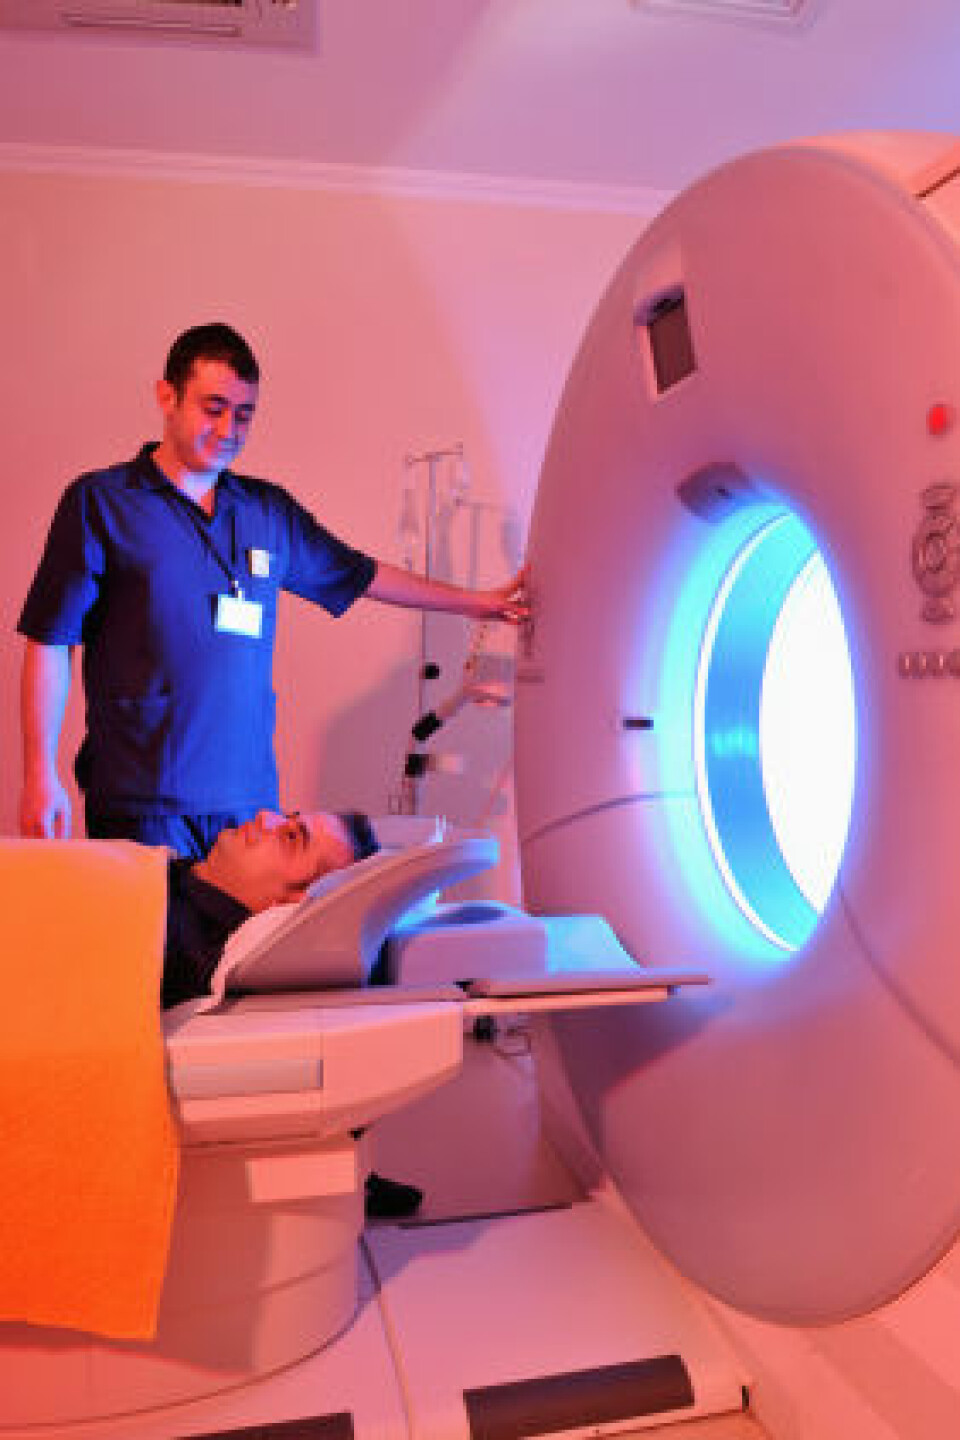 'I studien ble deltagernes hjerner studert med en MR-maskin, som den på bildet. Hugdahl mener de også burde brukt fMRI-metoden. (Illustrasjonsfoto: iStockphoto)'